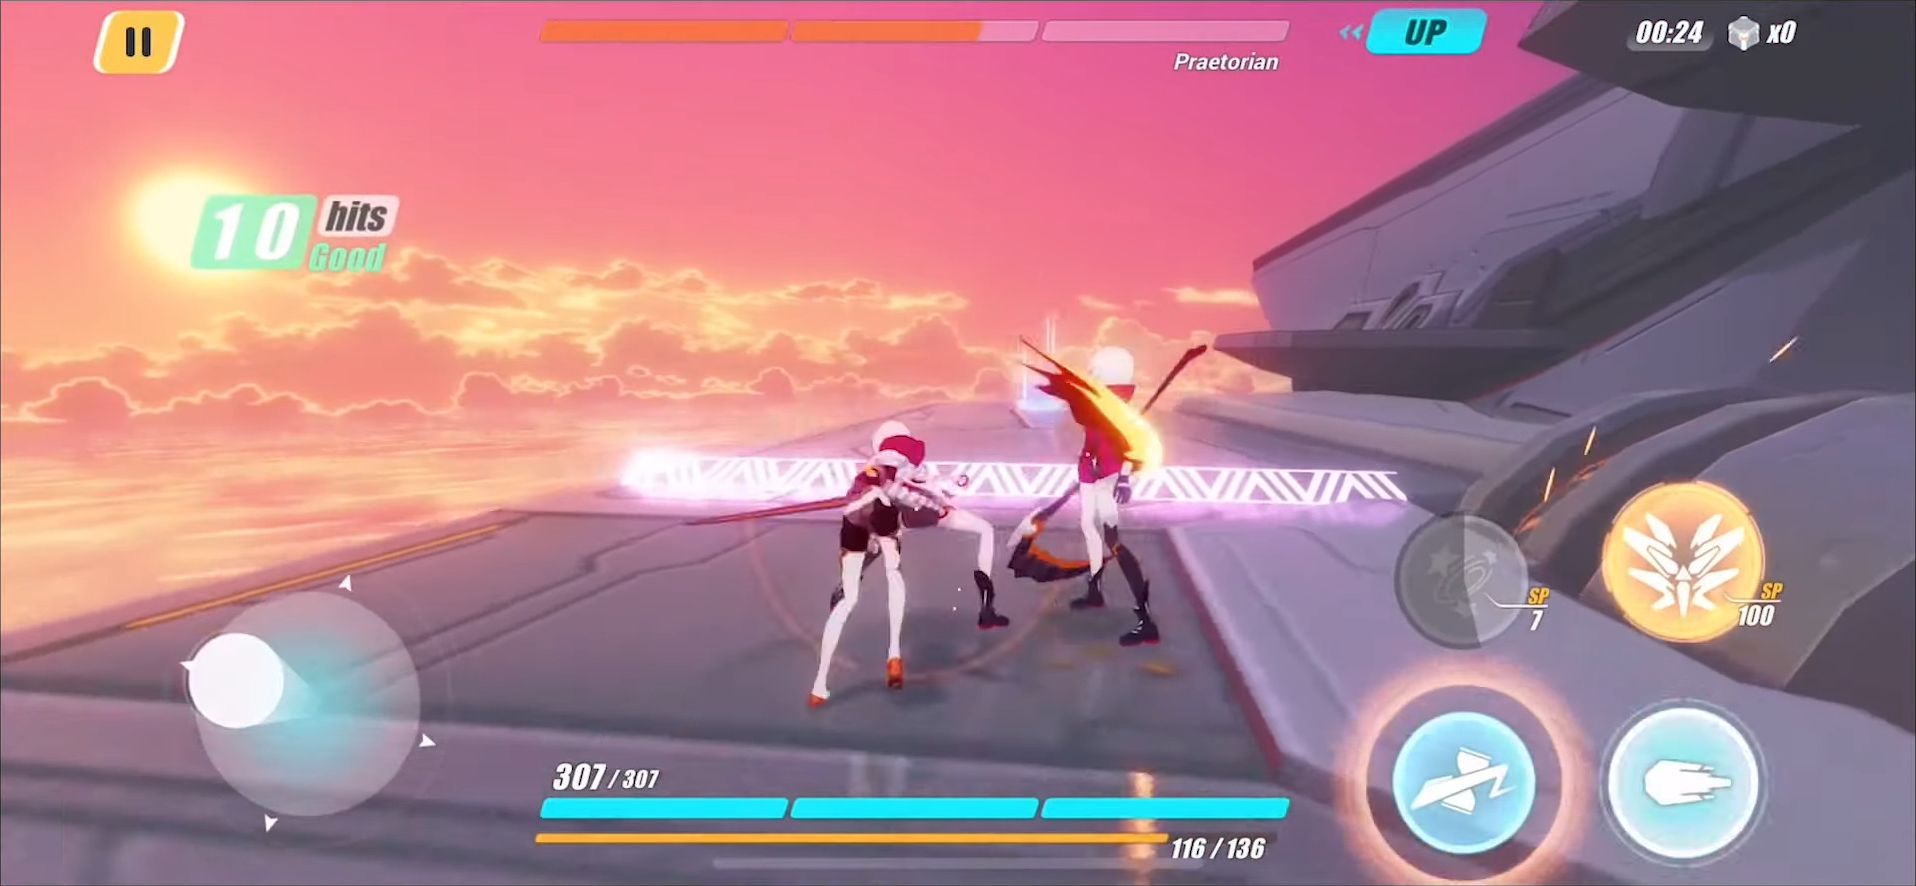 Honkai Impact 3rd - Android game screenshots.